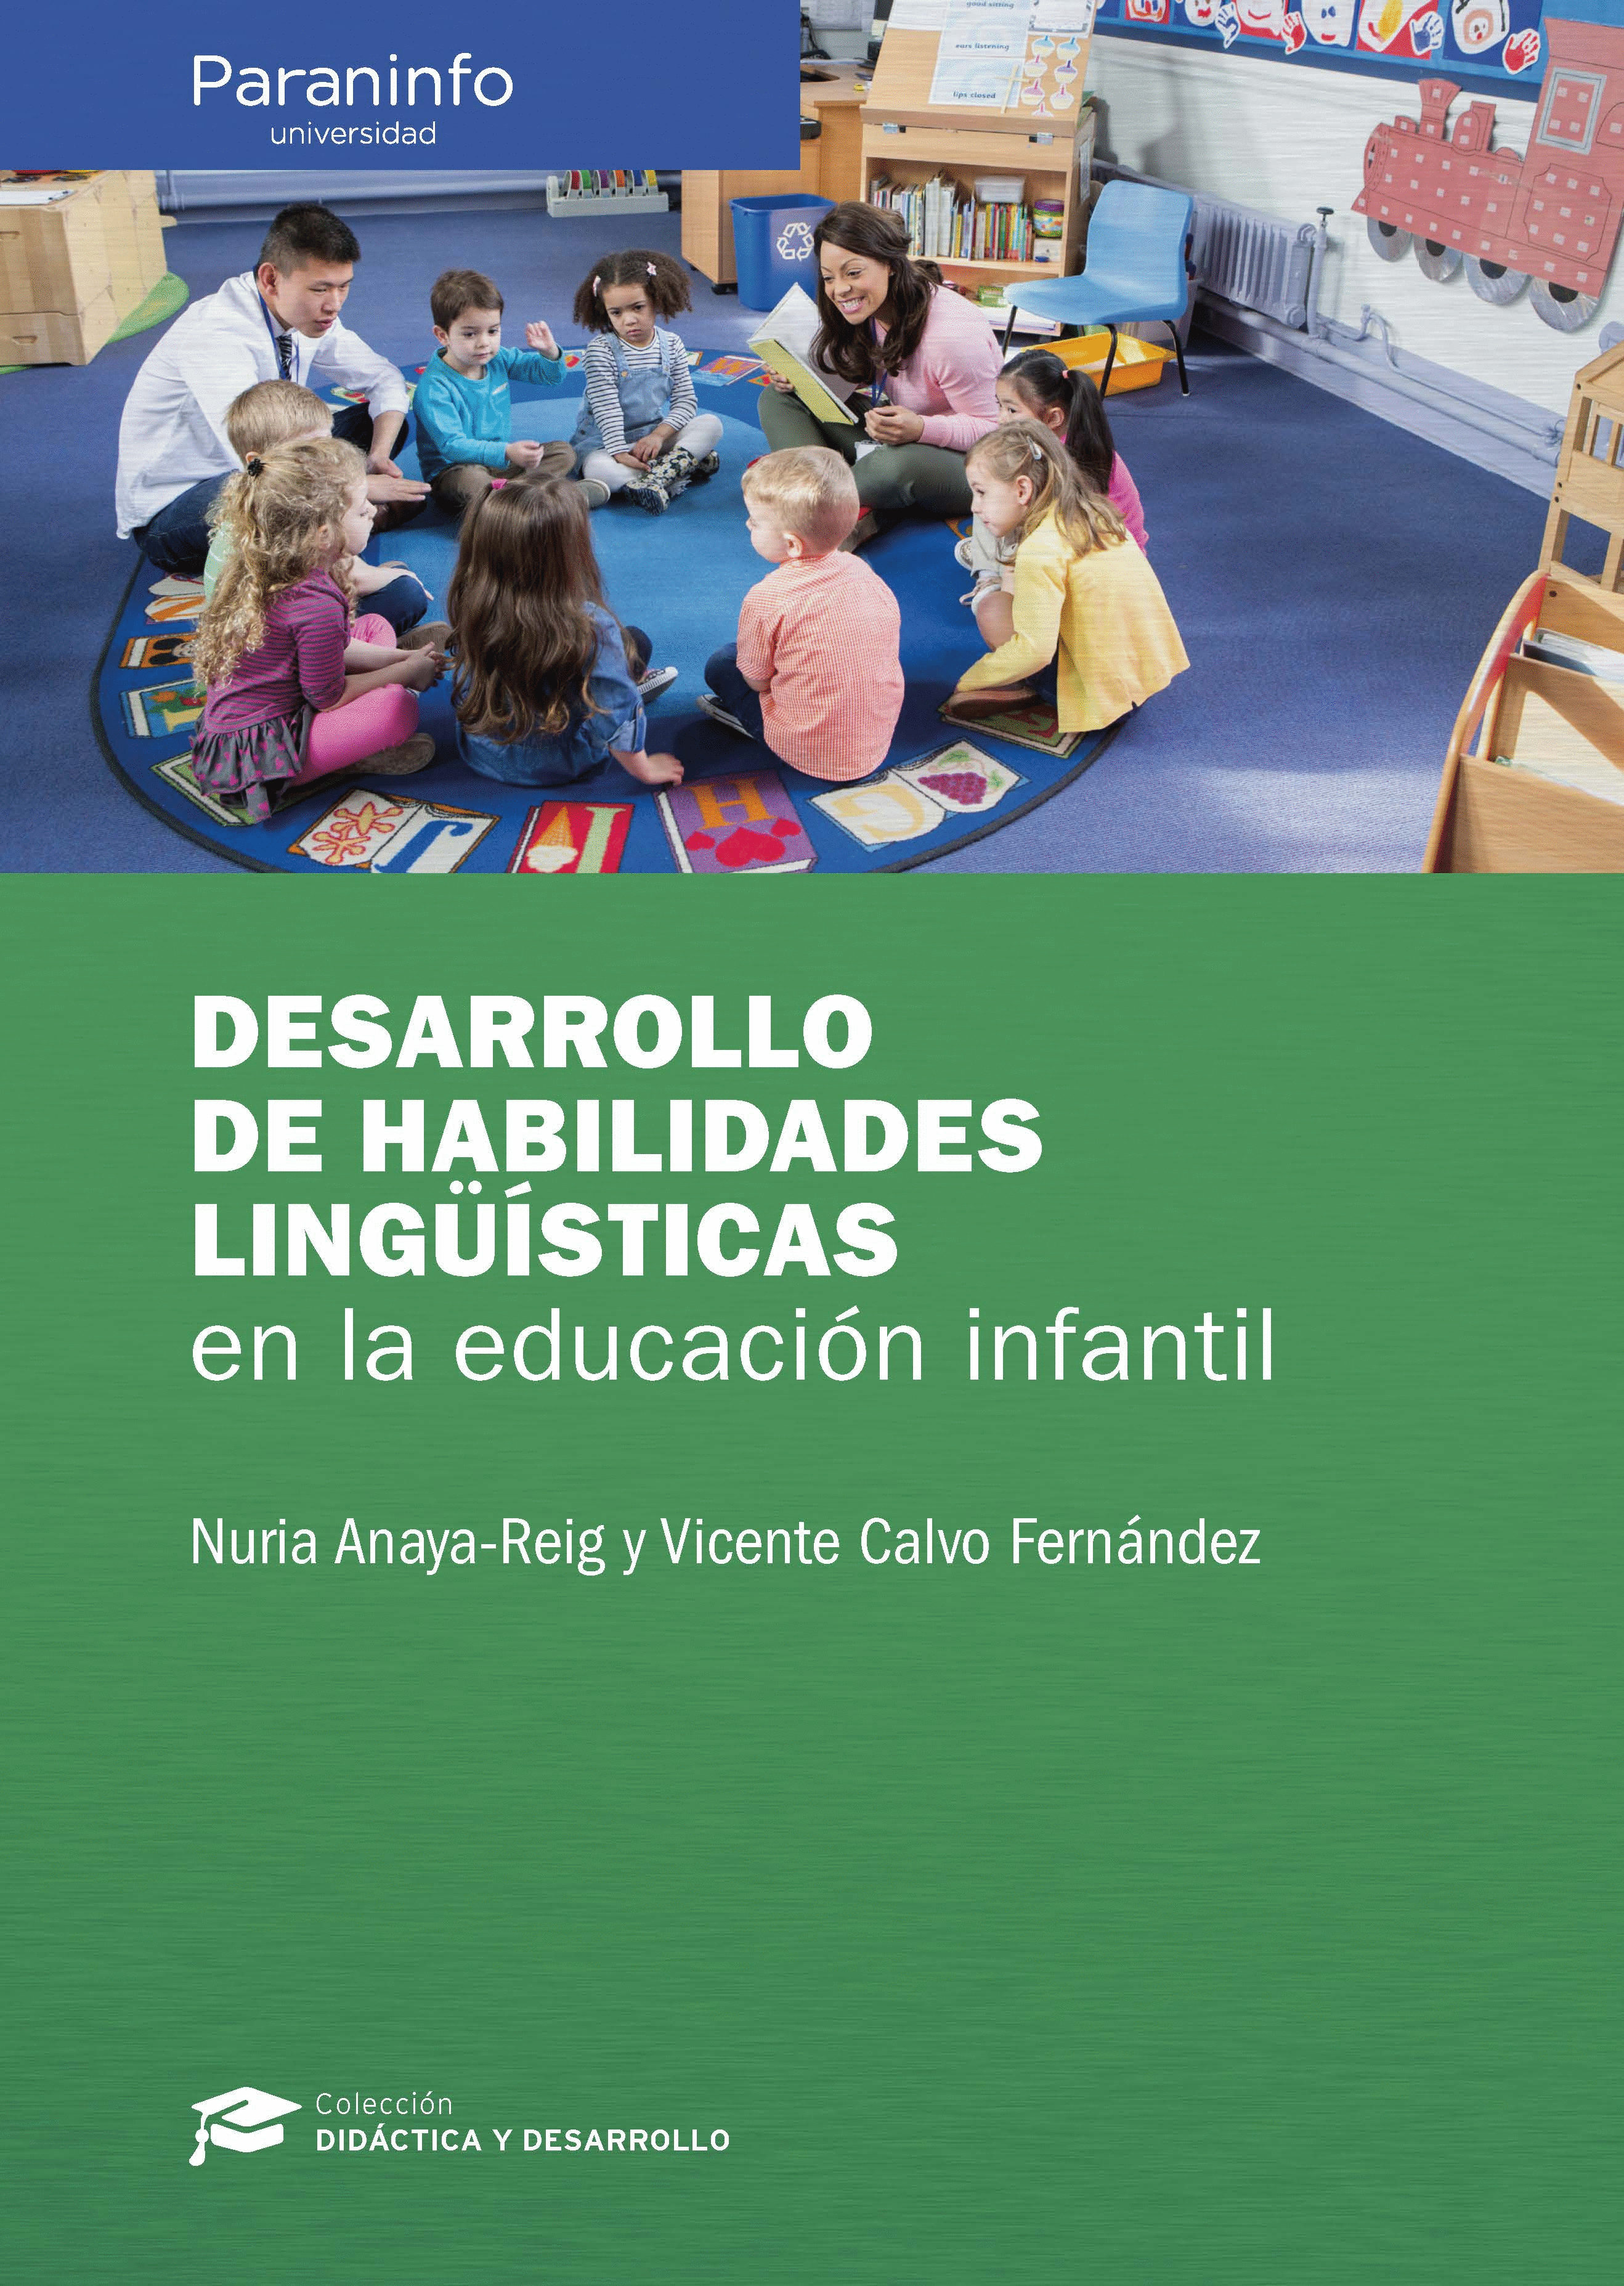 DESARROLLO HABILIDADES LINGUISTICAS EN EDUCACION INFANTIL